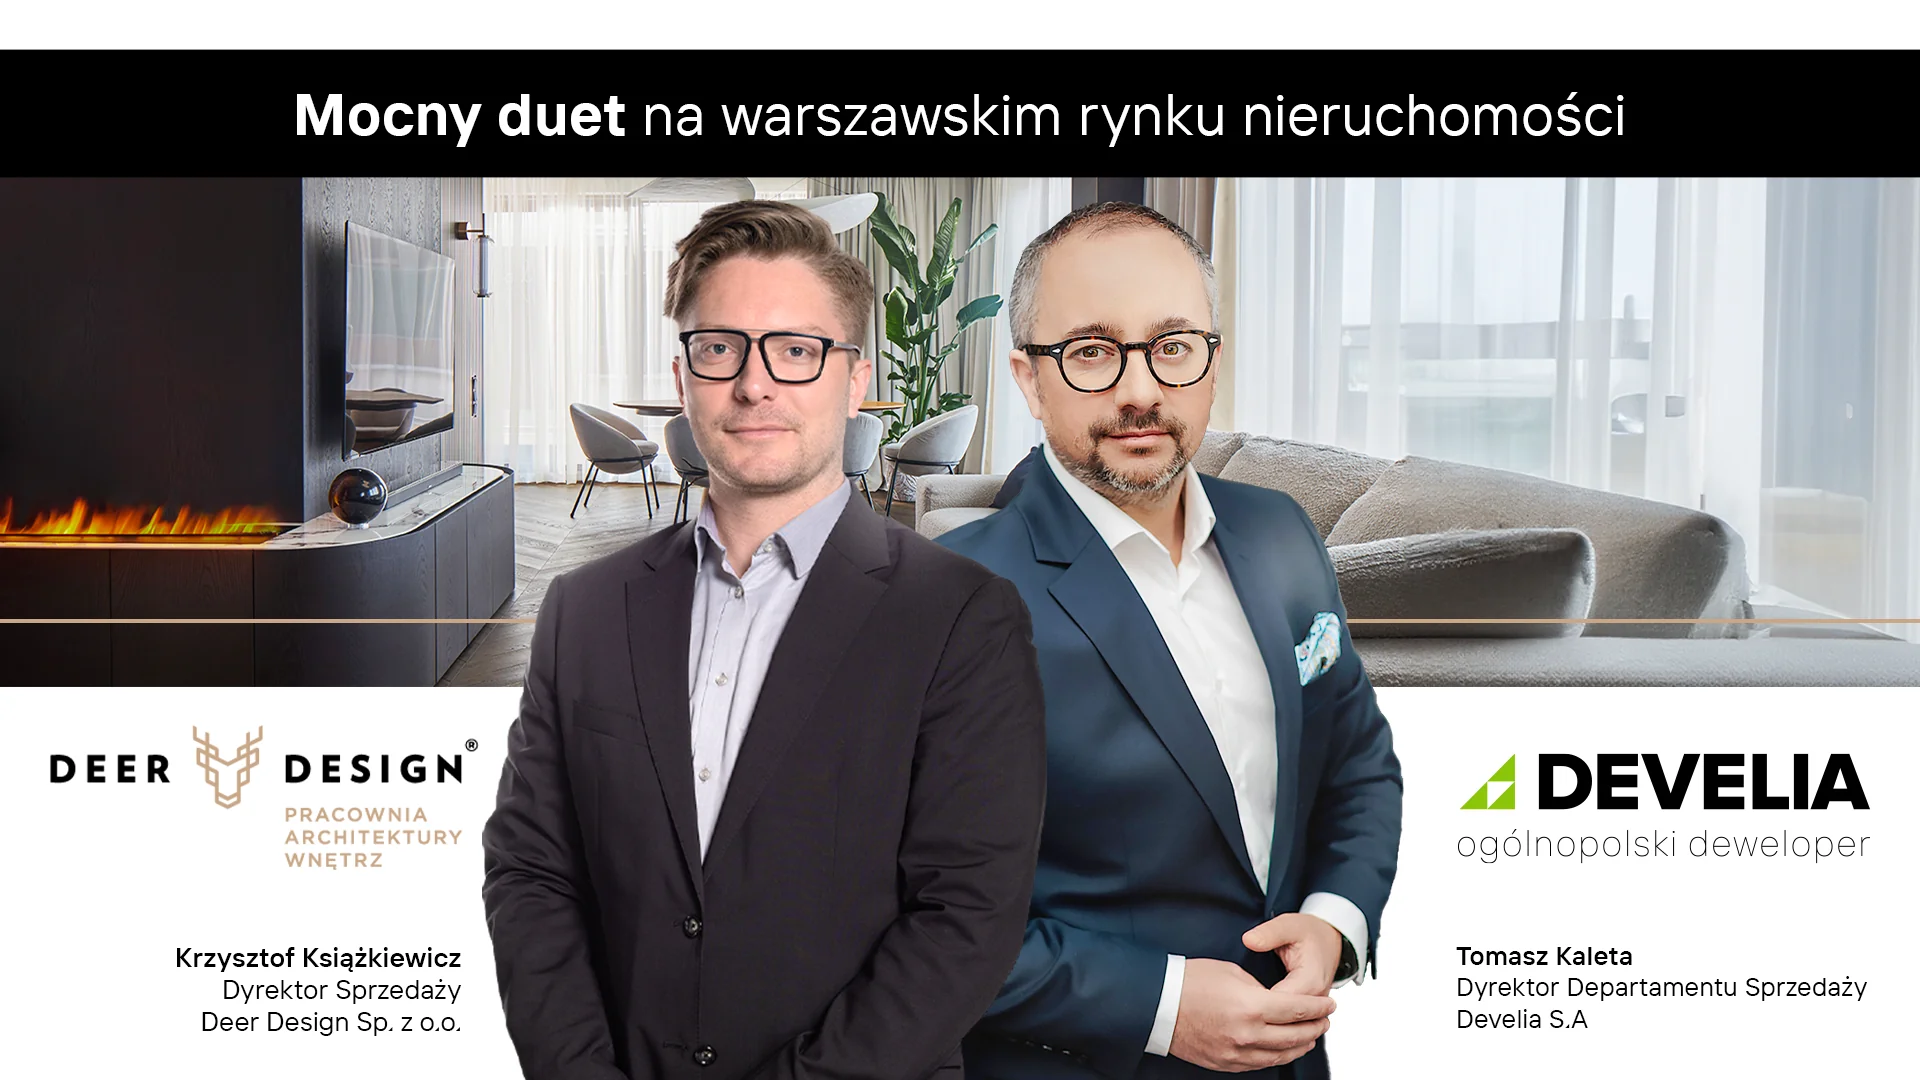 Mocny duet na warszawskim rynku nieruchomości. Deer Design i Develia łączą siły